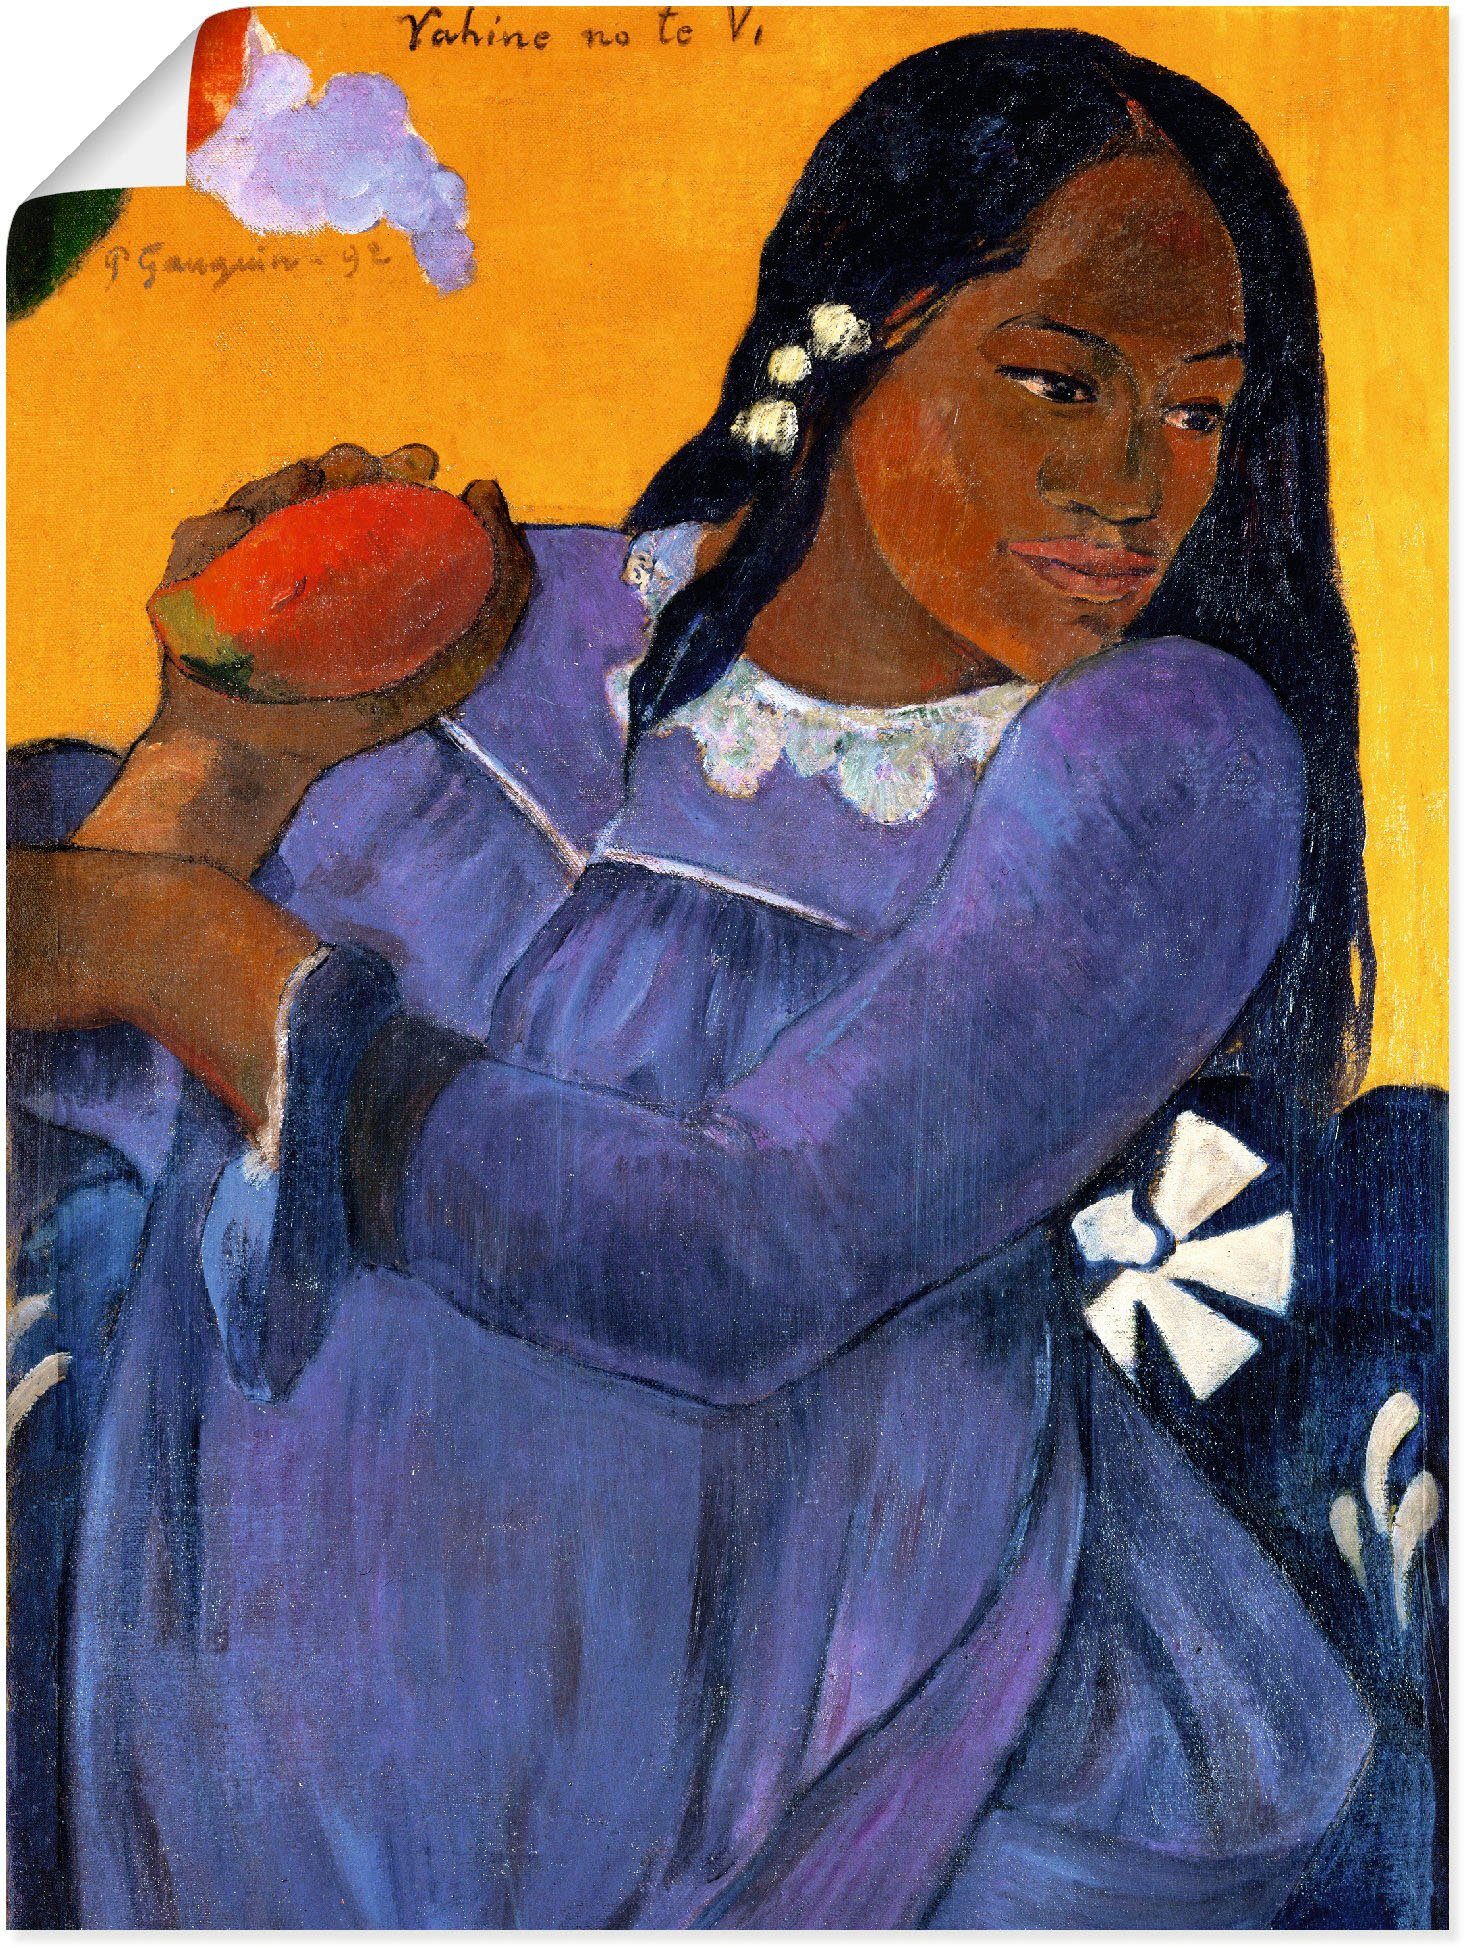 Artland Artprint Vrouw in blauwe jurk met mangovrucht in vele afmetingen & productsoorten -artprint op linnen, poster, muursticker / wandfolie ook geschikt voor de badkamer (1 stuk